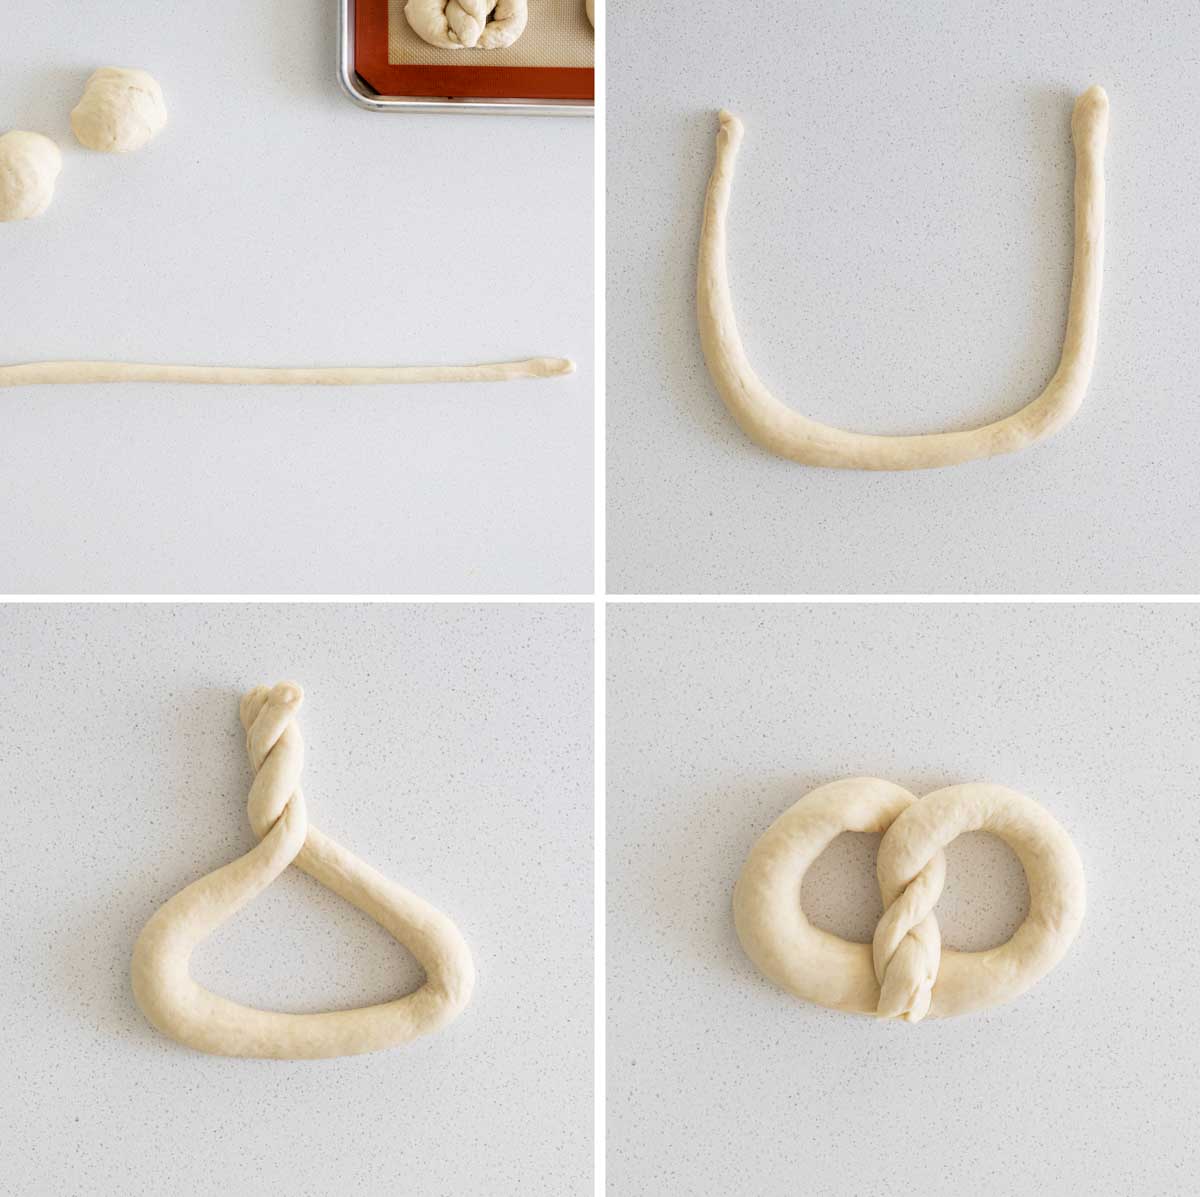 how to shape homemade pretzels